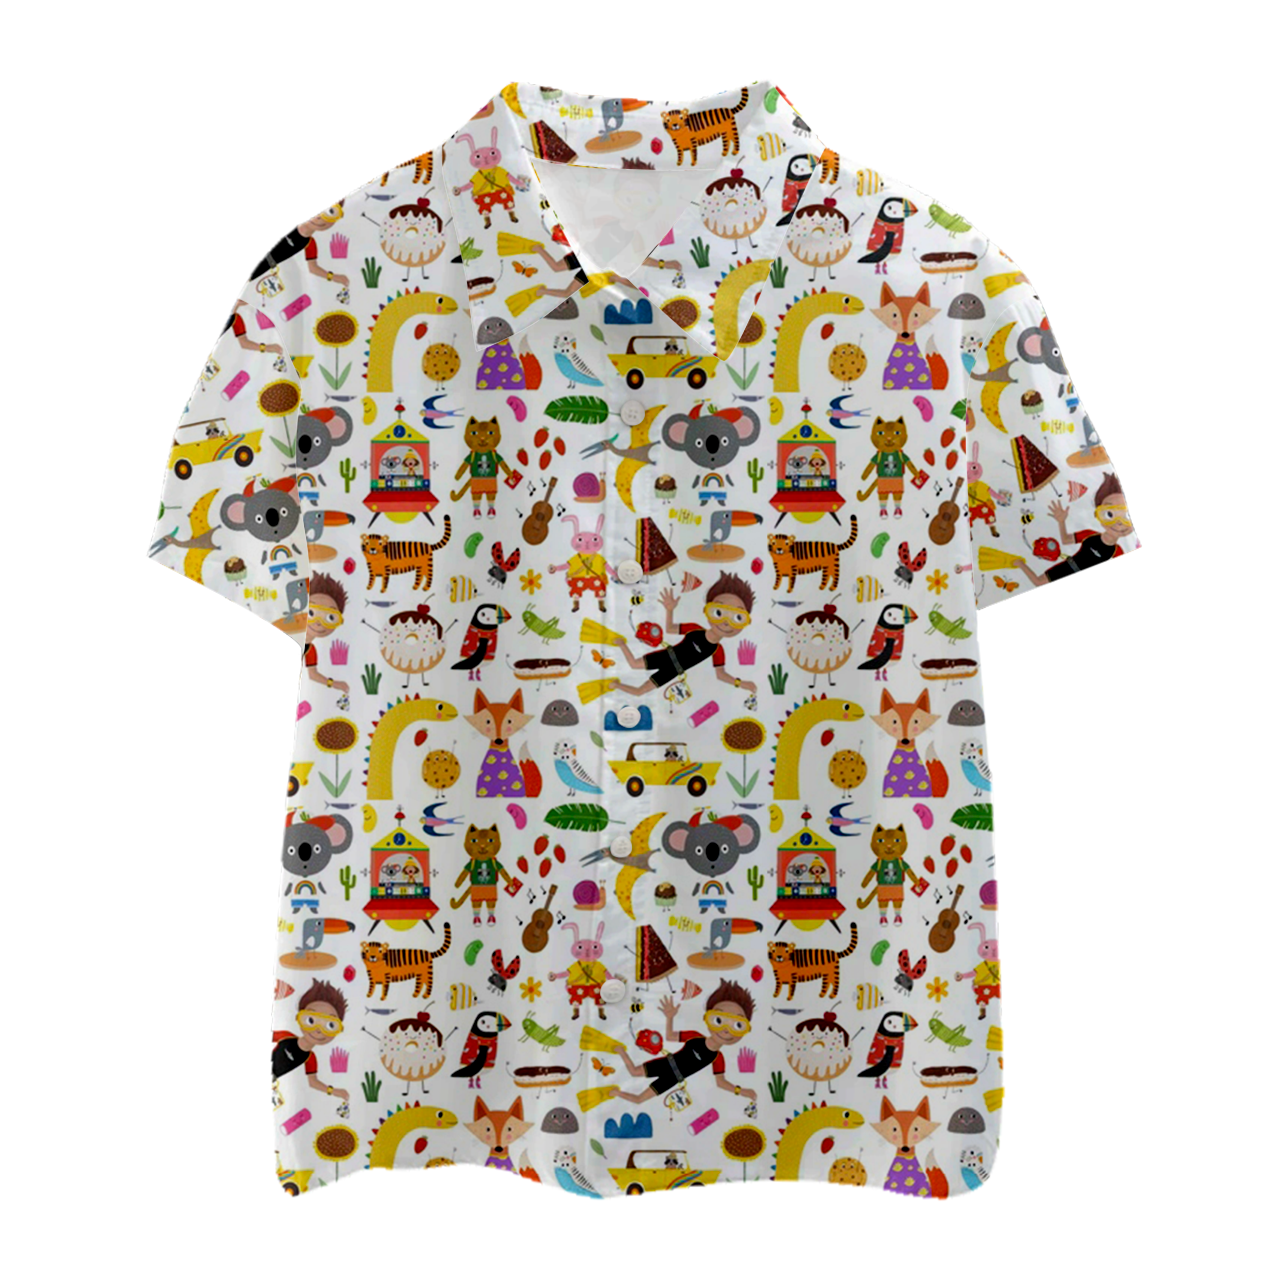 Cartoon World Kids Button Shirt